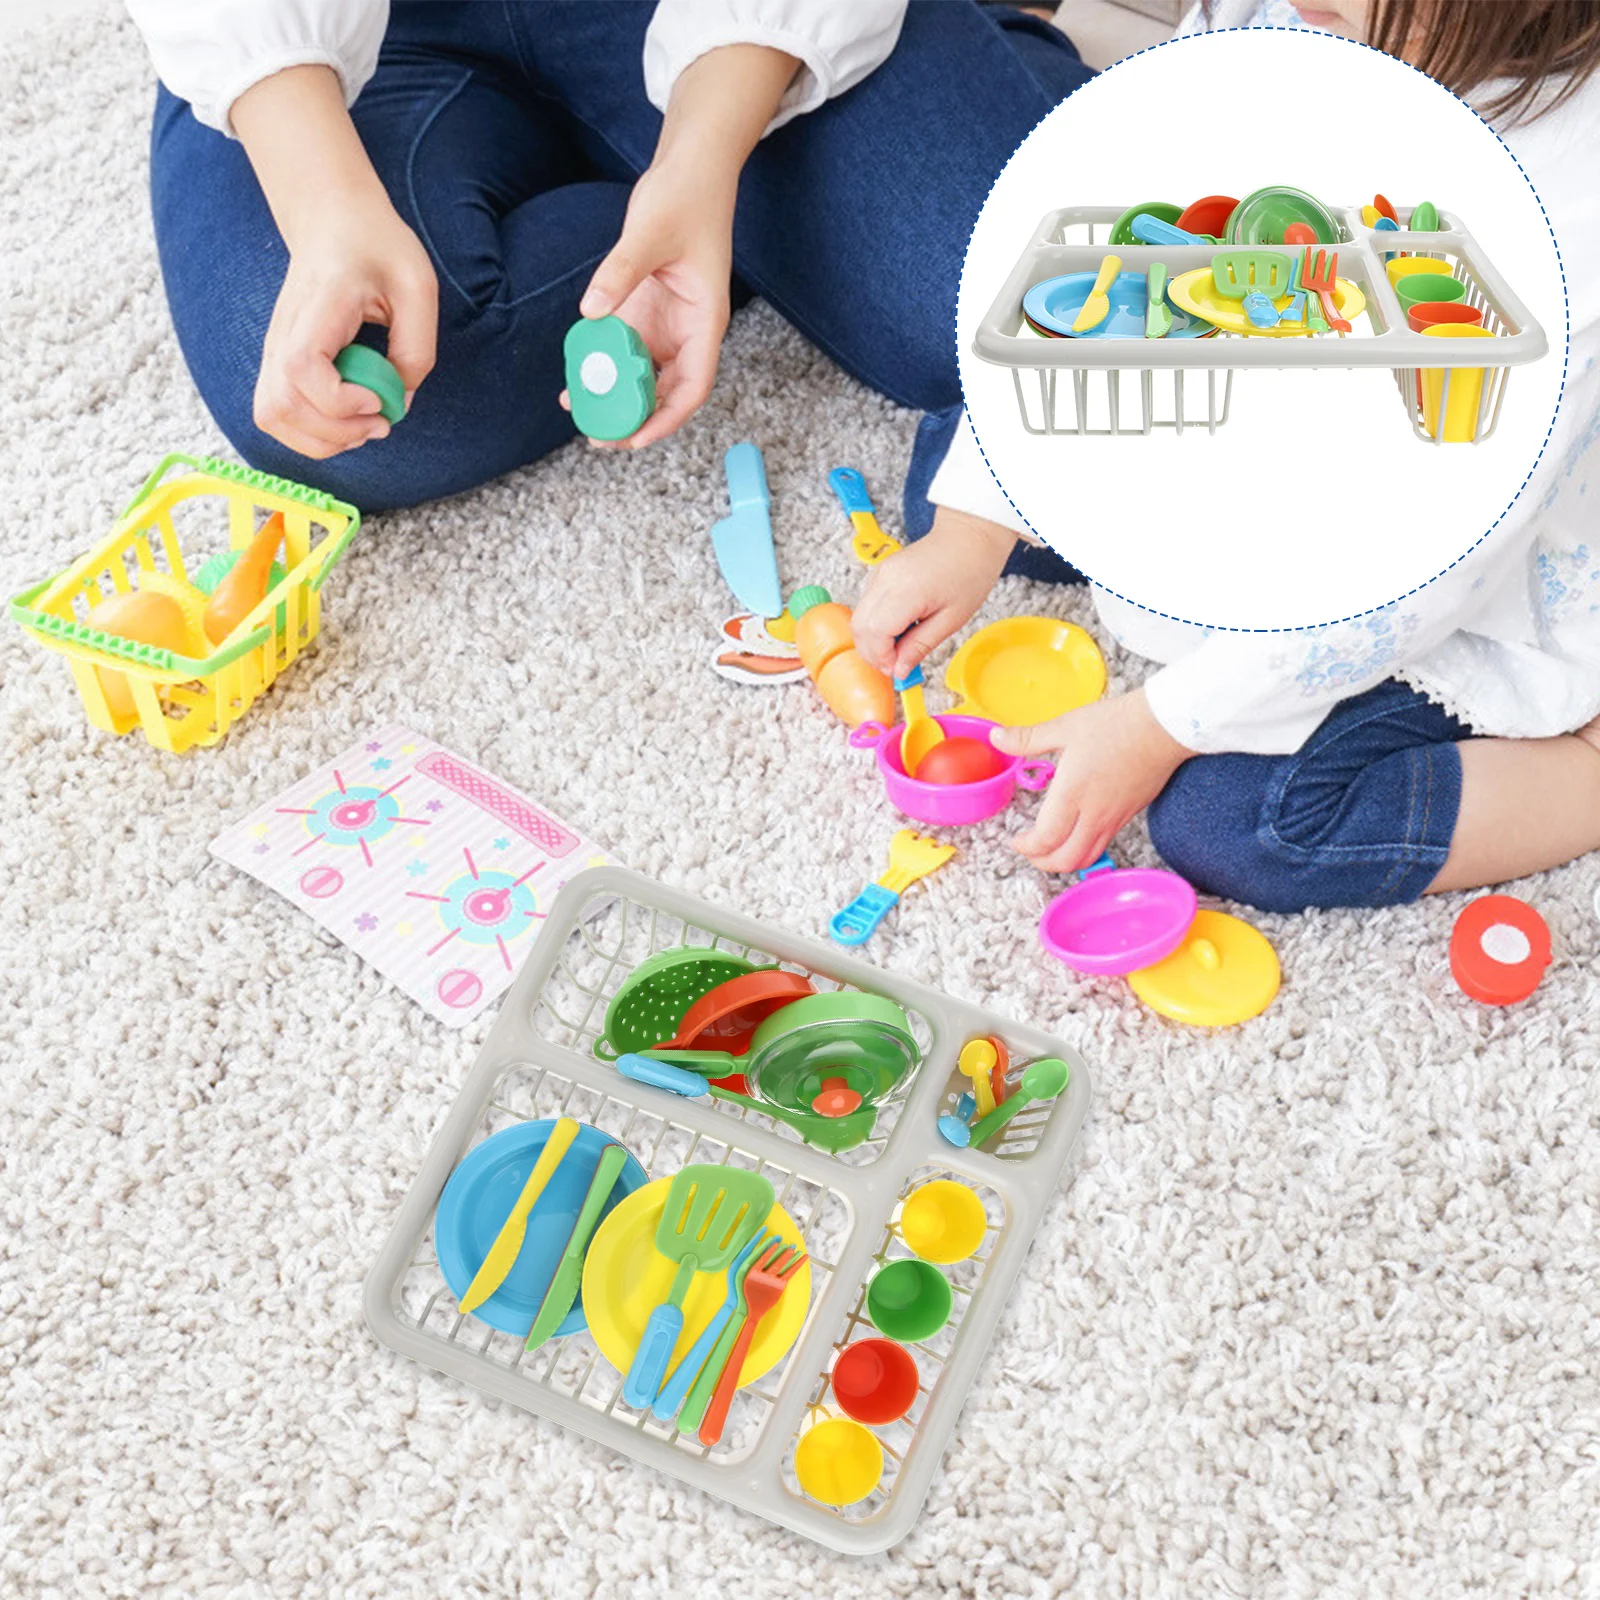 

Пластиковый кухонный набор, Детские Необычные игрушки, столовые приборы, развивающие игрушки, Интерактивная игровая посуда для родителей и детей